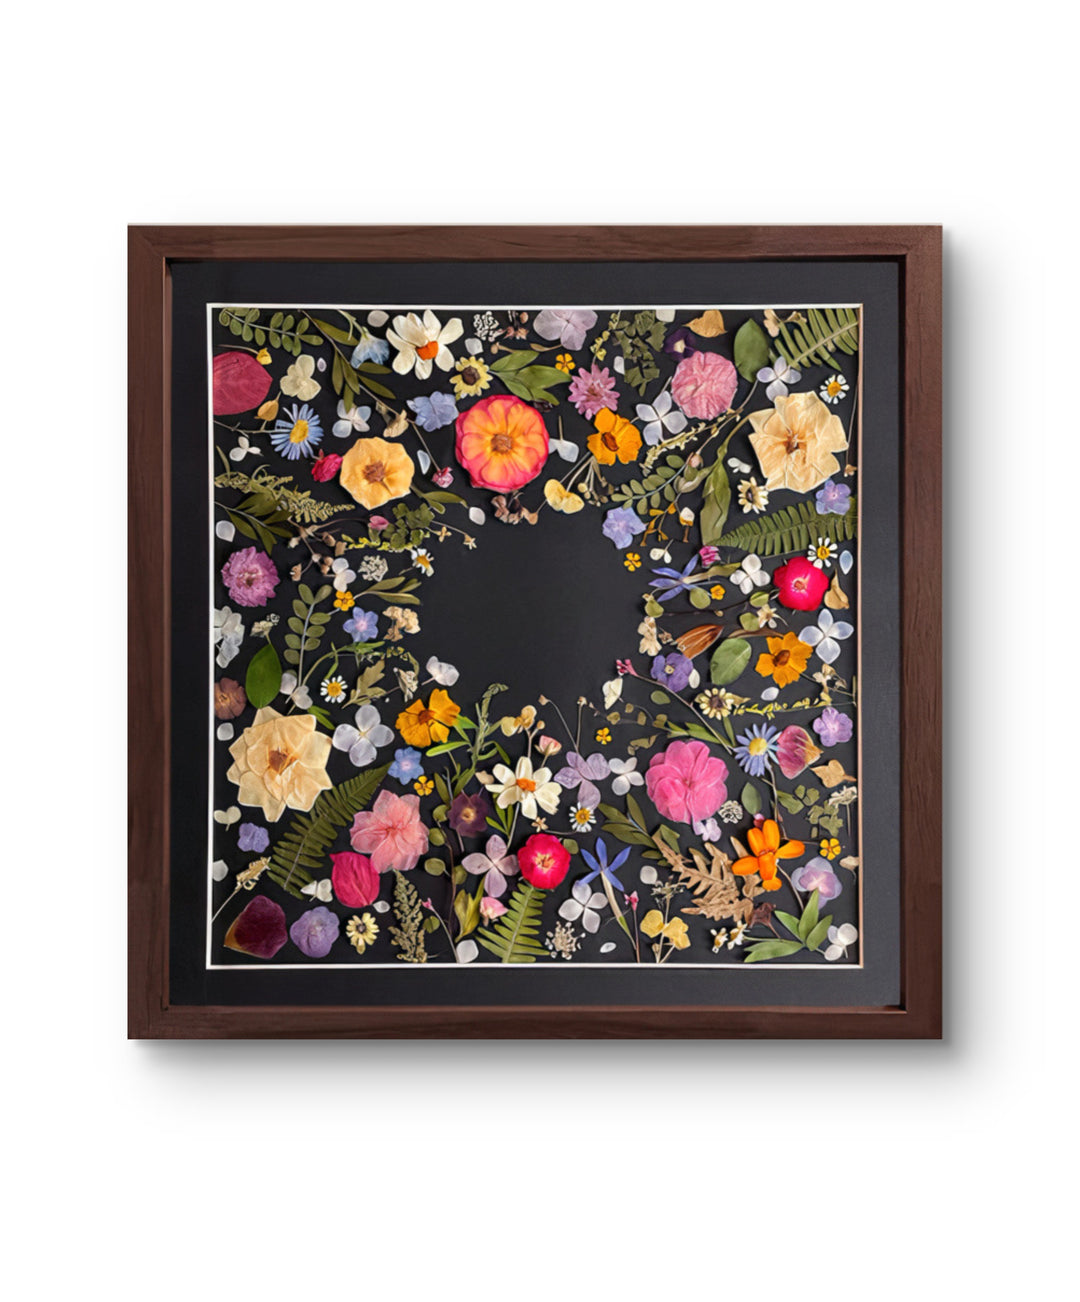 black background pressed flower frame art with flower petals